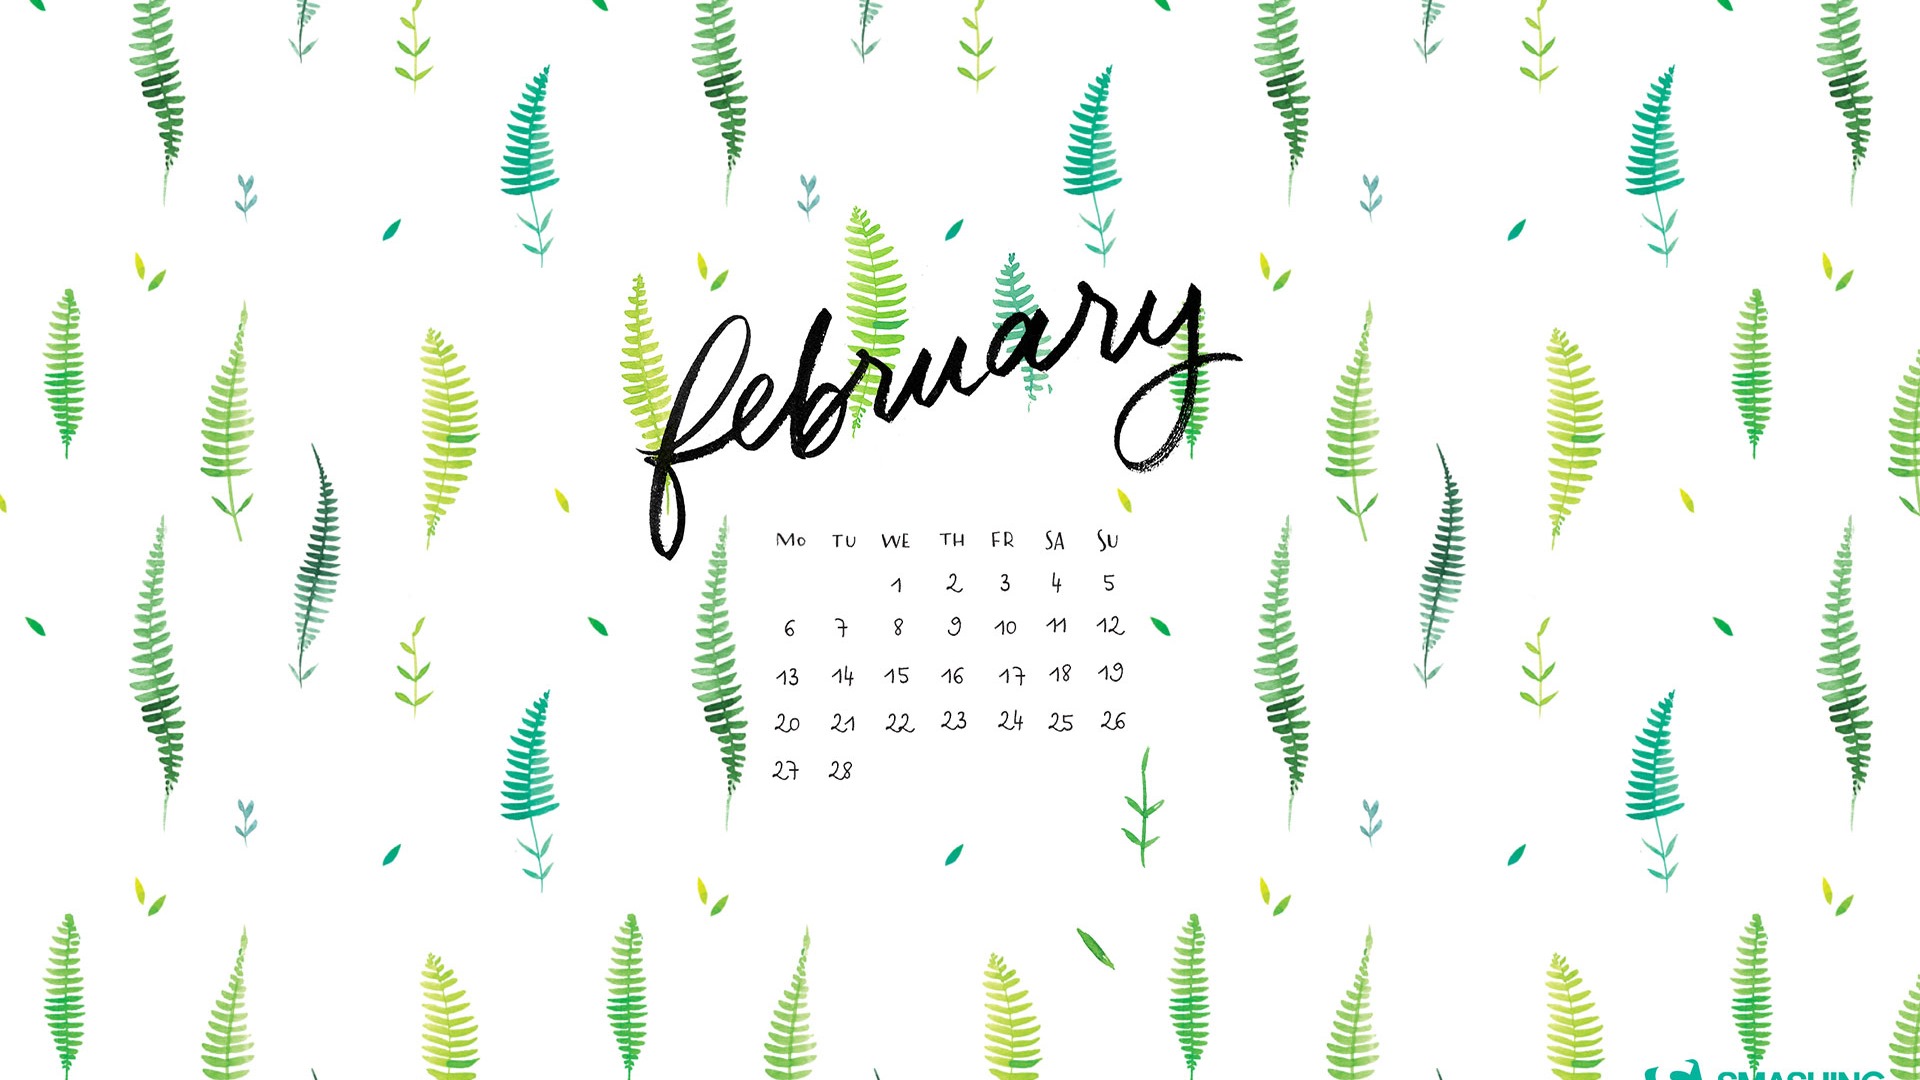 February 2017 calendar wallpaper (1) #16 - 1920x1080